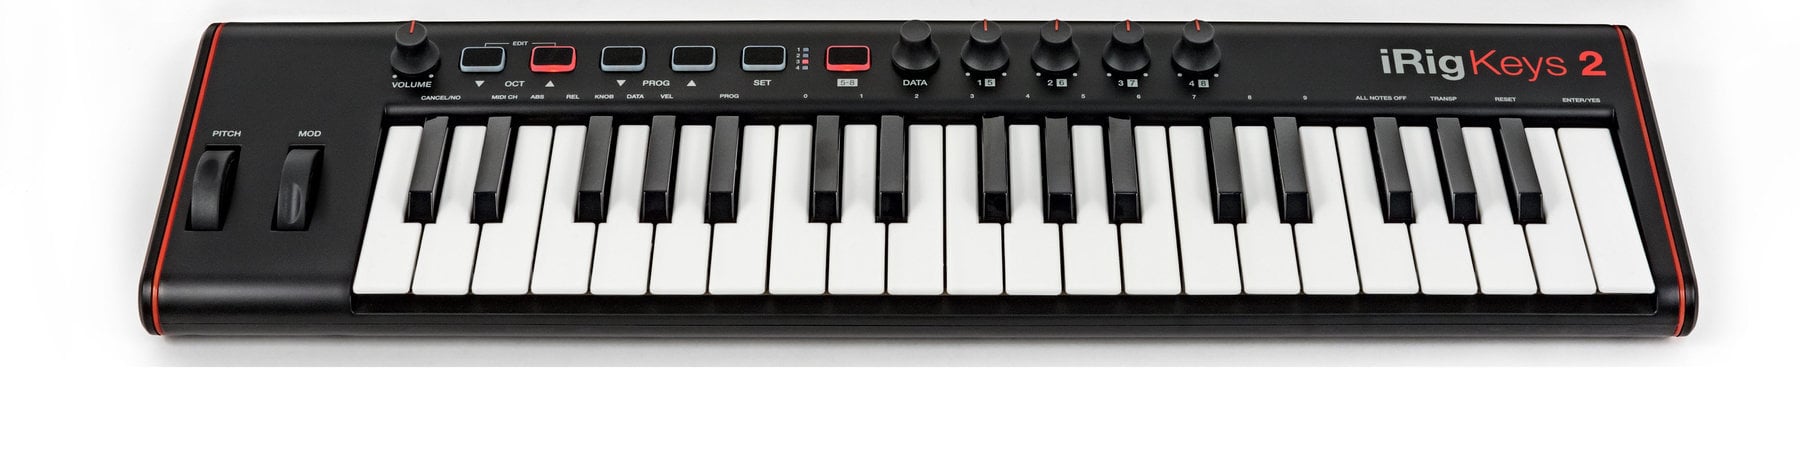 Master Keyboard IK Multimedia iRig Keys 2 (Pre-owned)